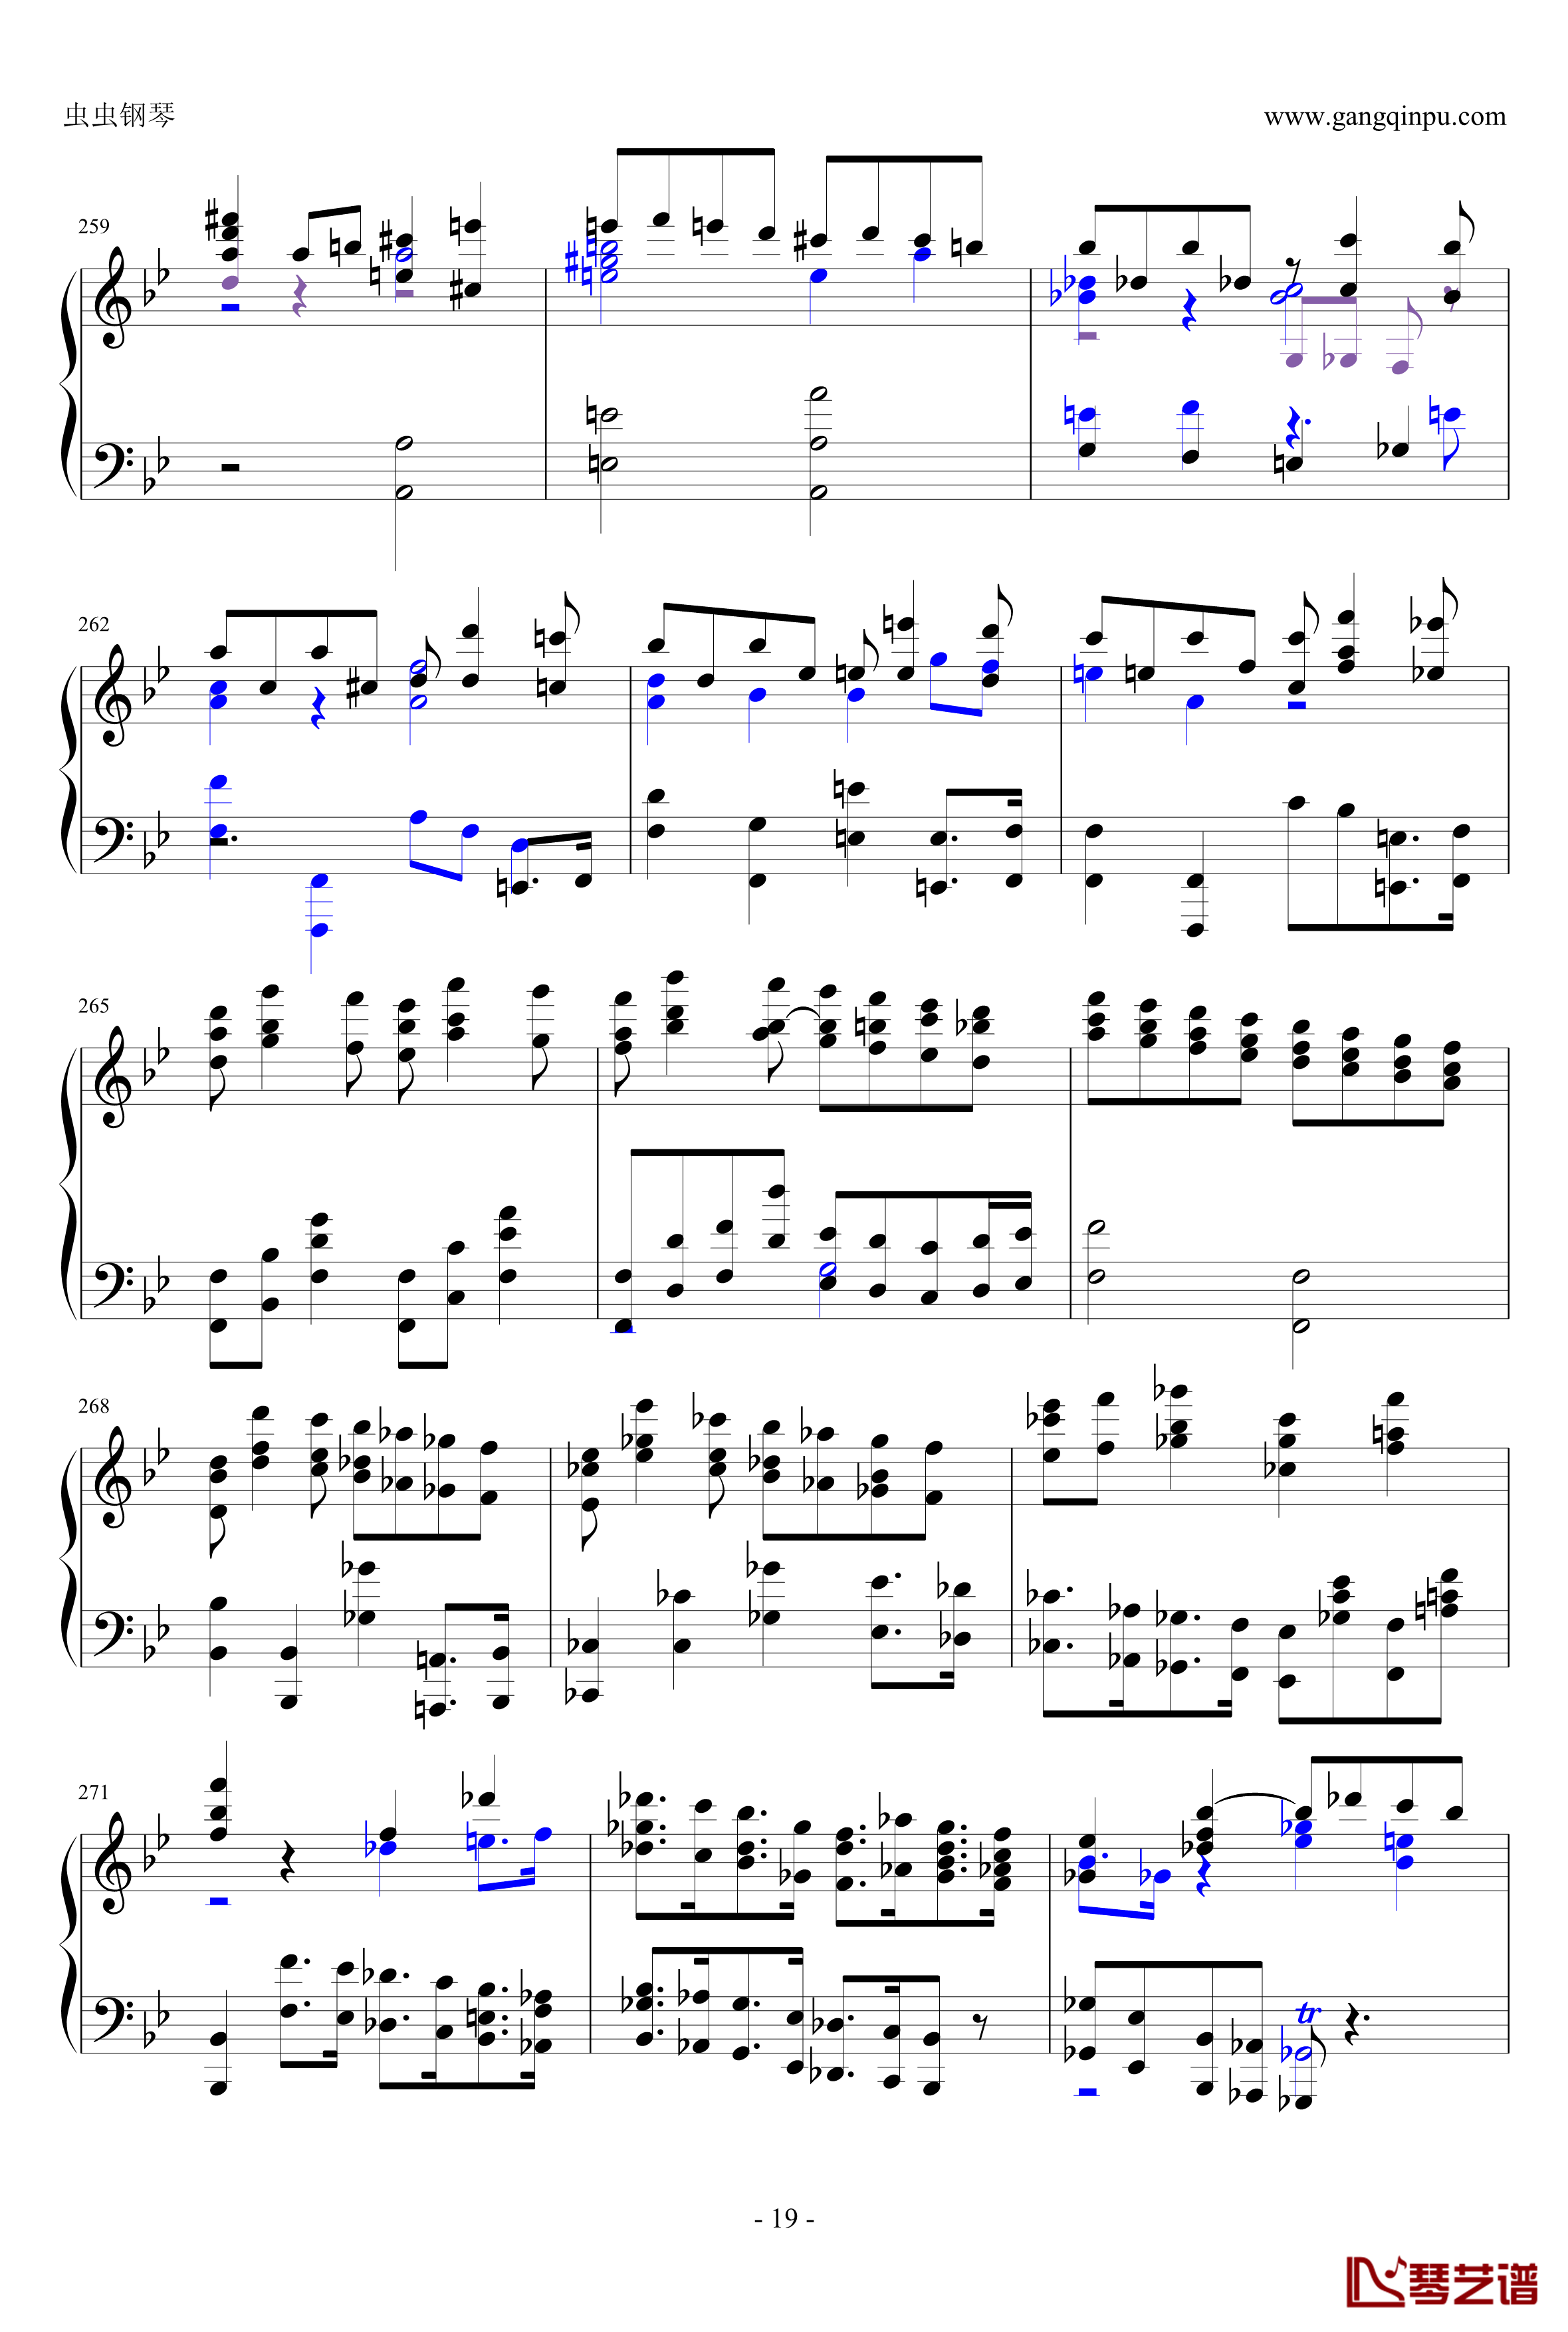 布鲁克纳第五交响曲第四乐章钢琴谱-钢琴独奏版19